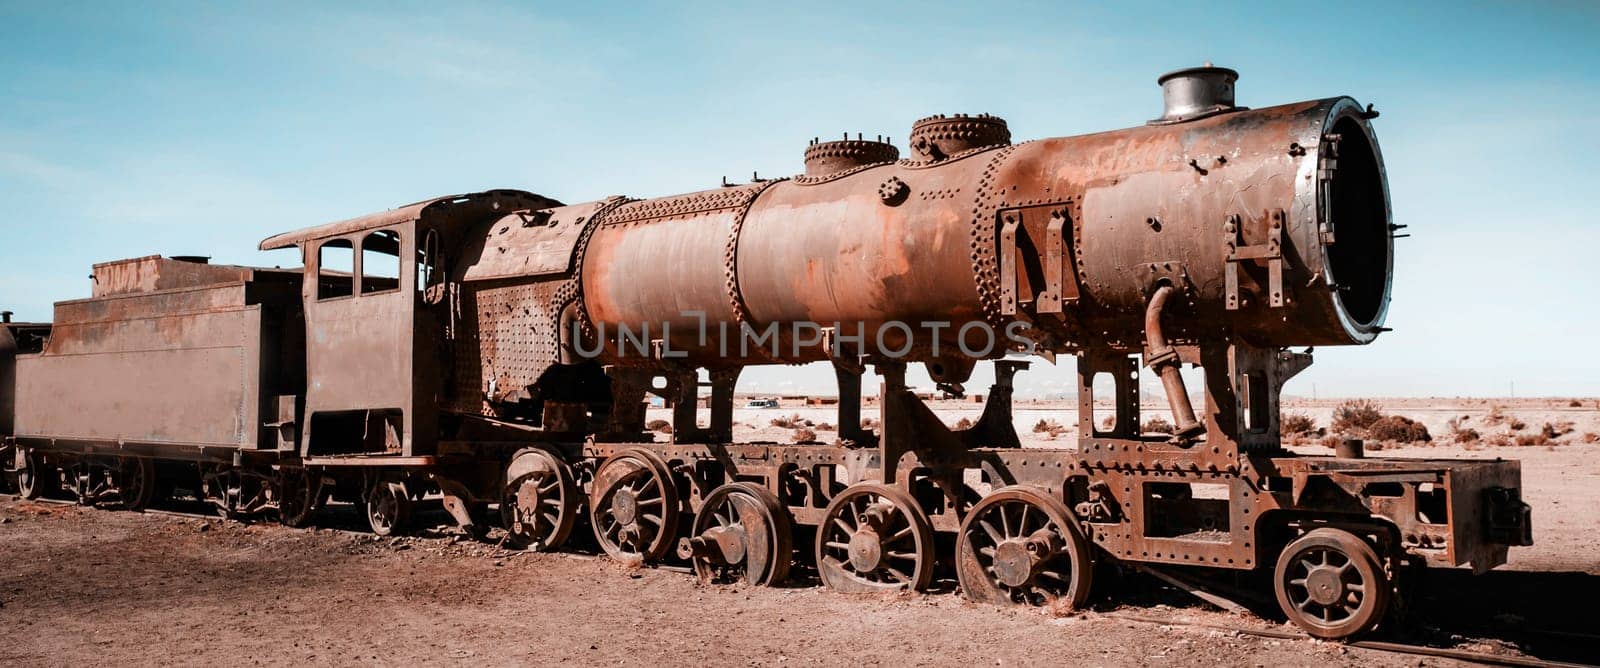 rusty steam locomotives in Bolivia by GekaSkr